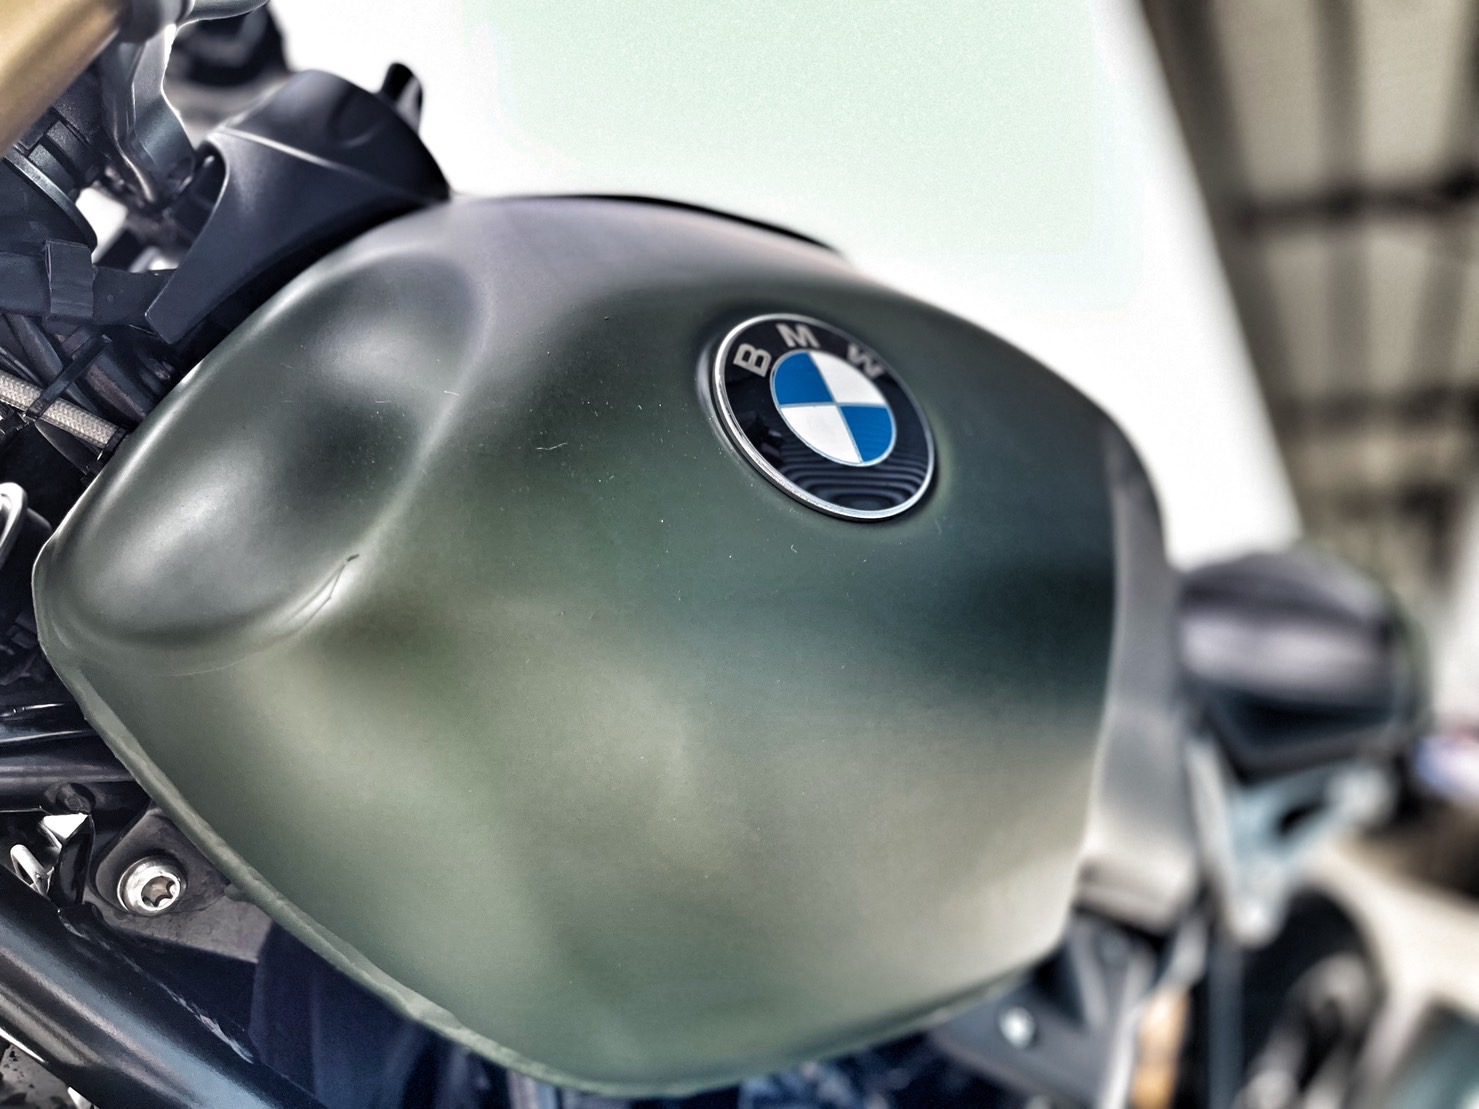 BMW R nineT - 中古/二手車出售中 視覺改裝 無摔車無事故 小資族二手重機買賣 | 小資族二手重機買賣